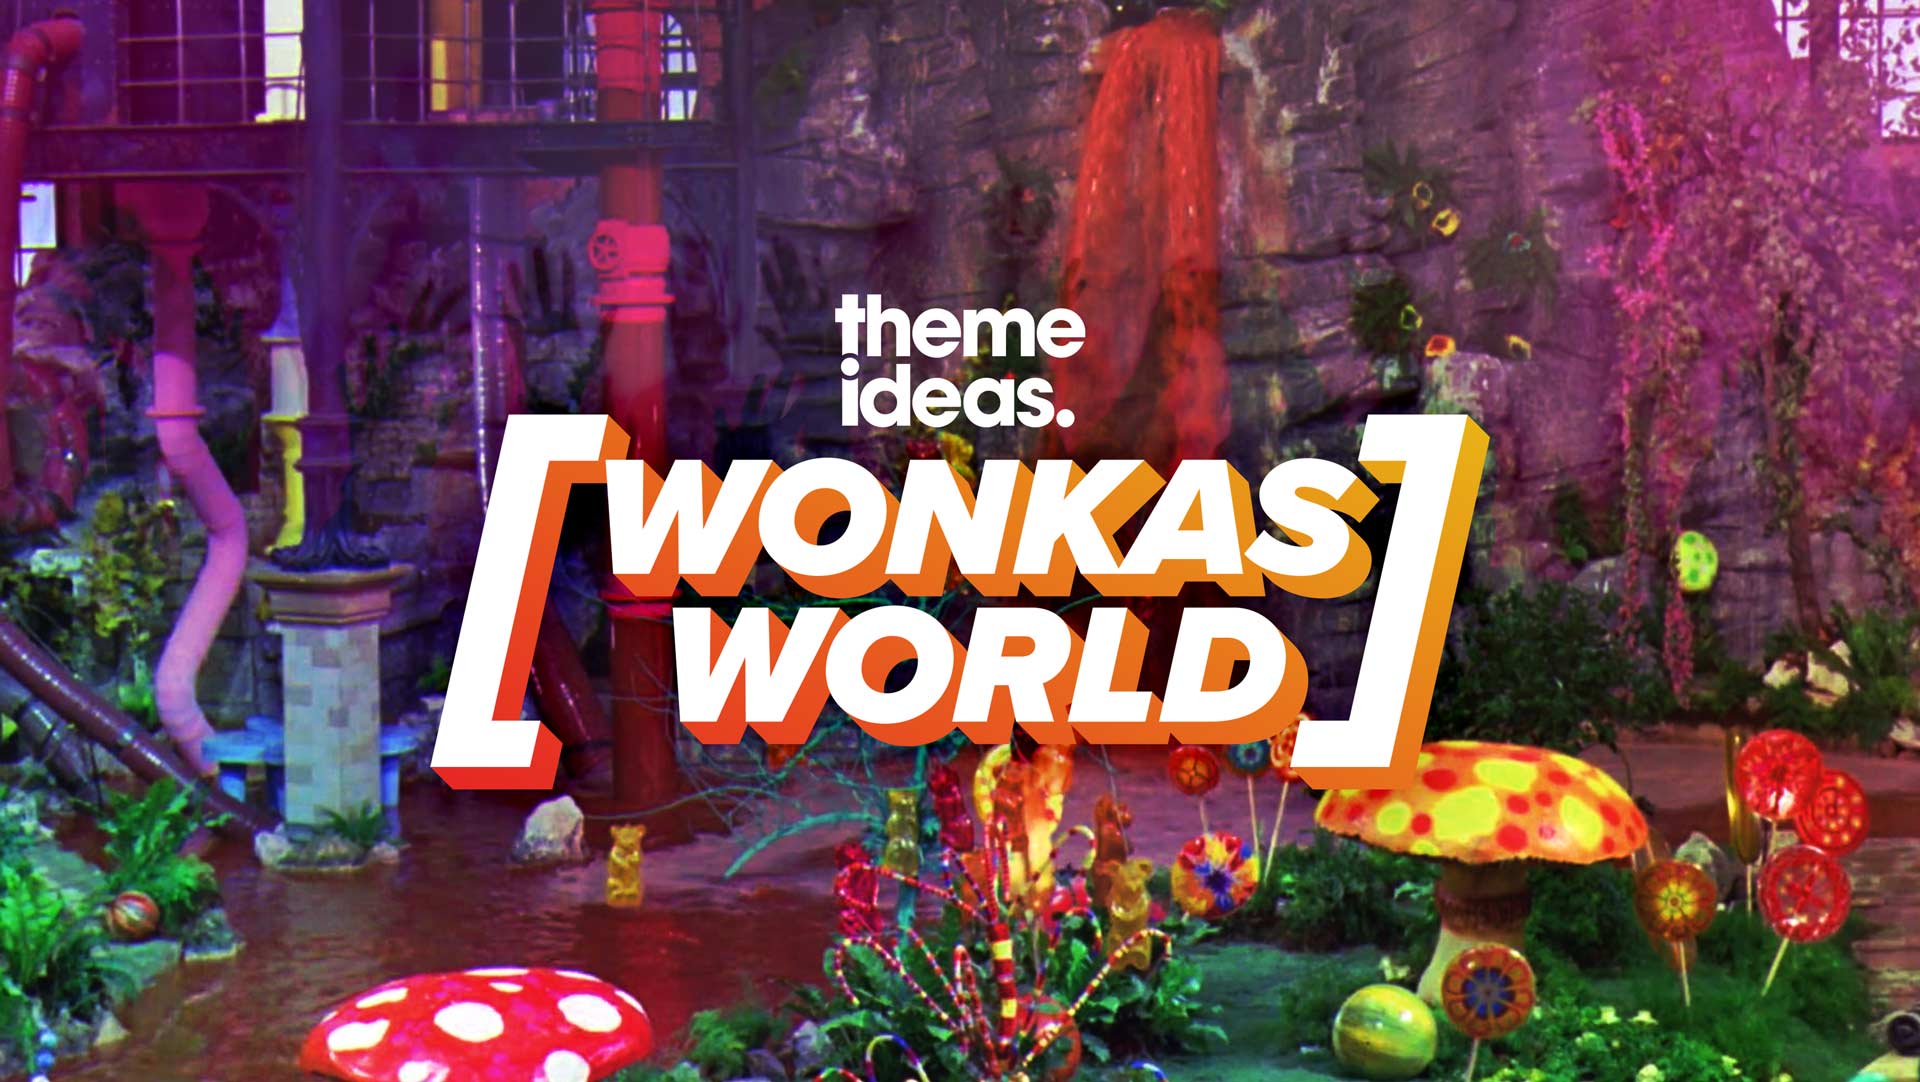 Wonka’s World